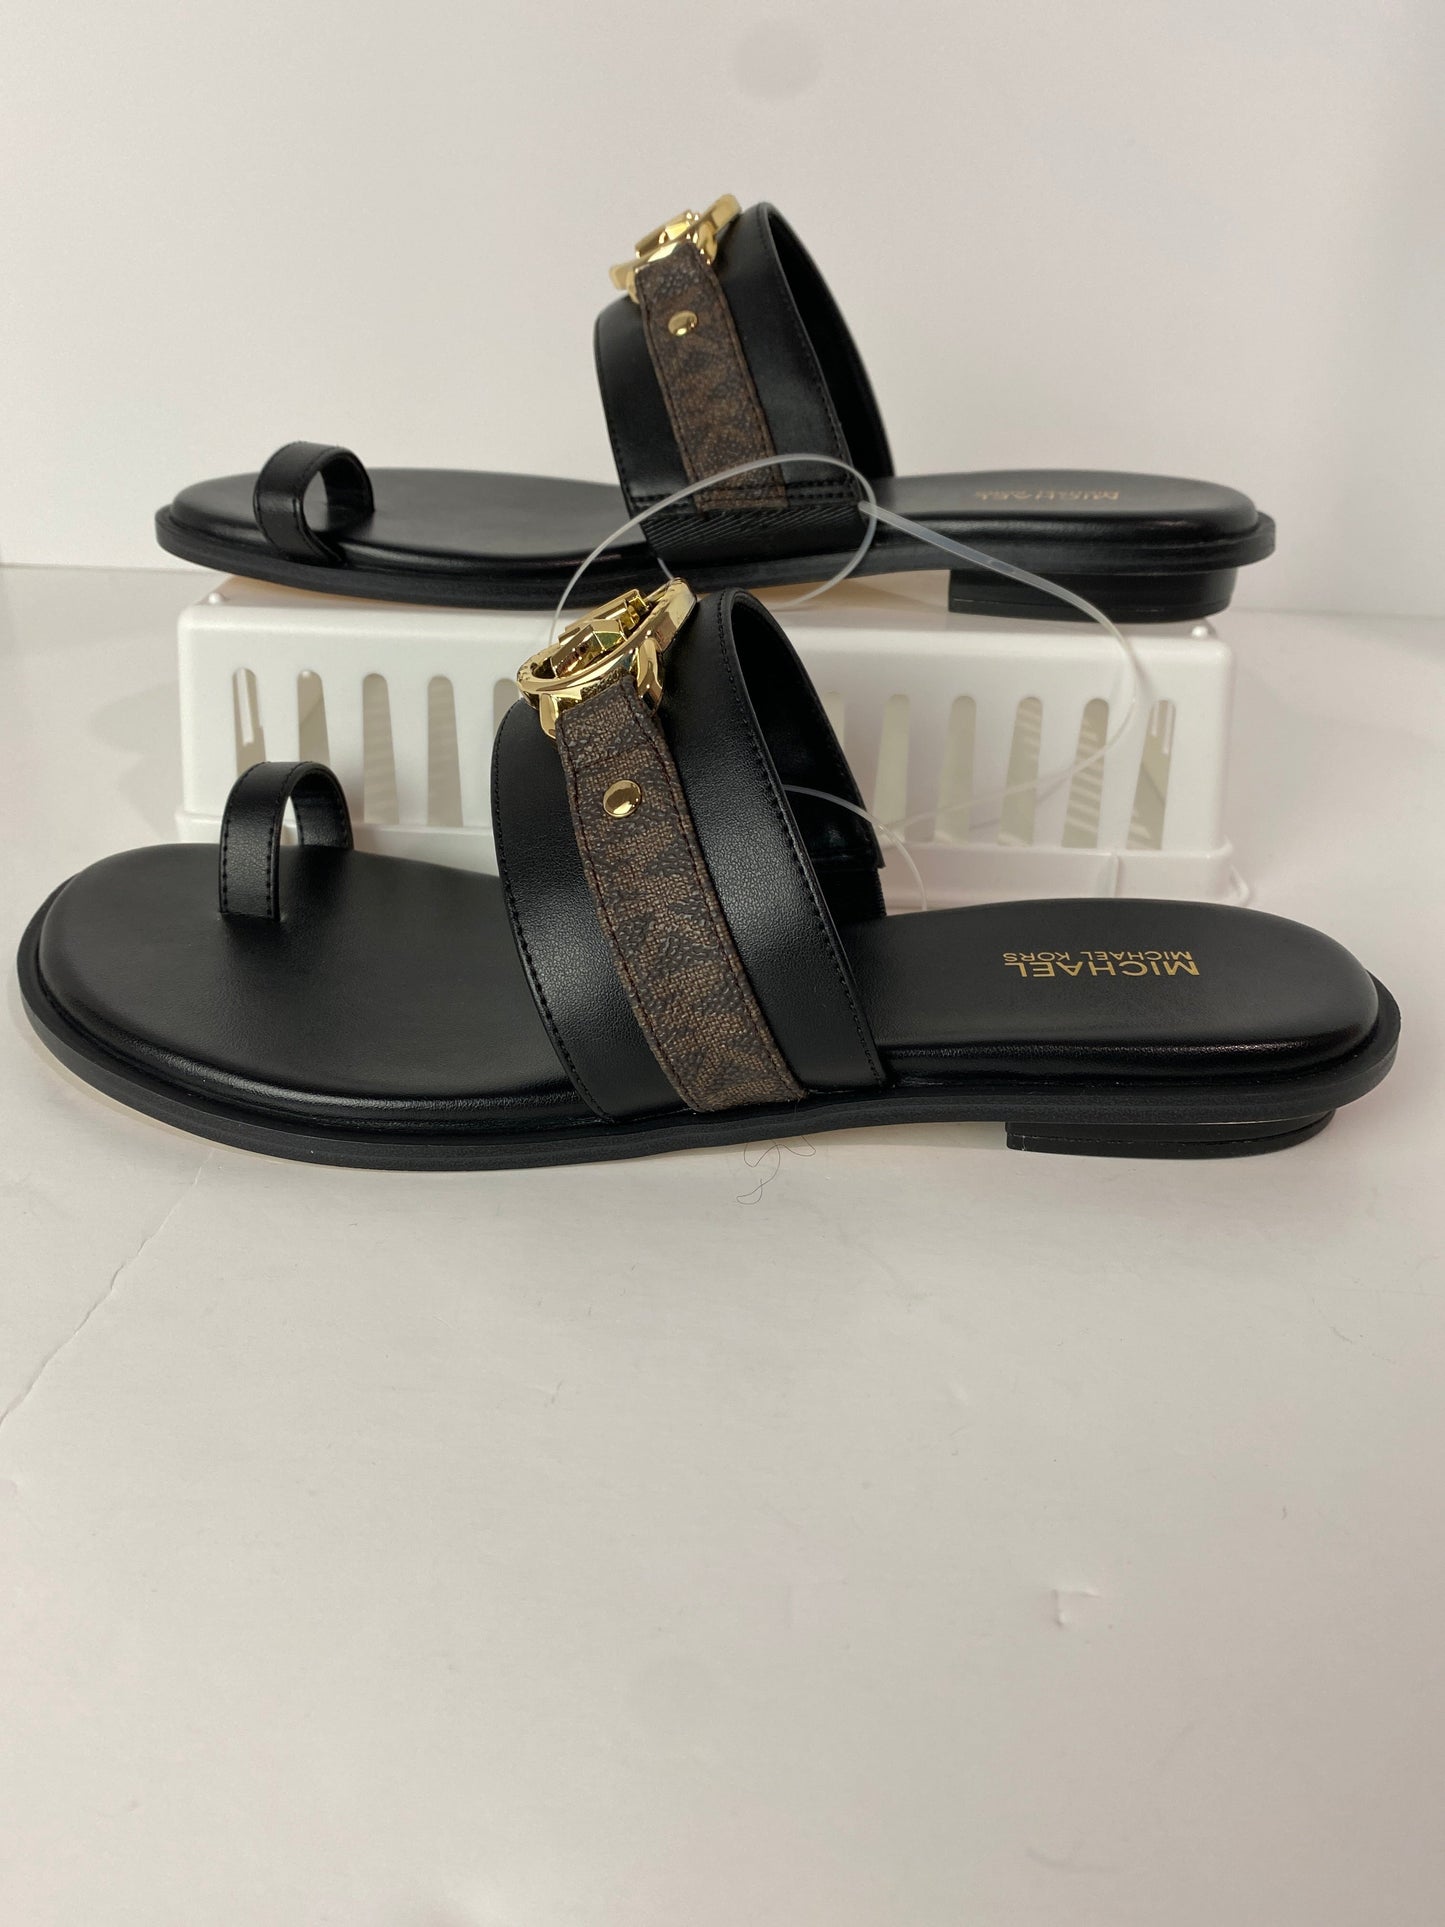 Black Sandals Designer Michael Kors, Size 9